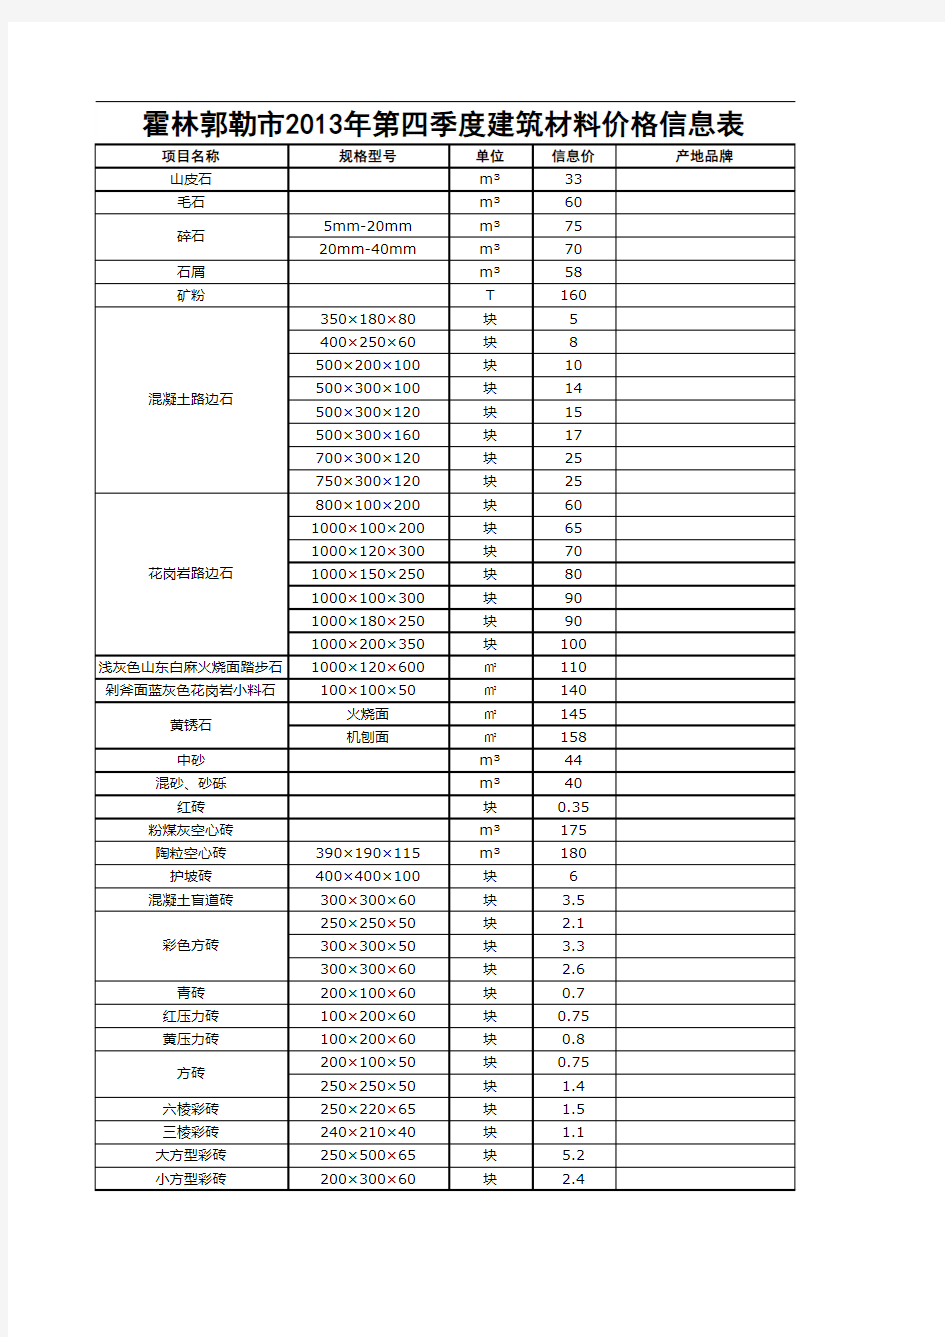 通辽市2013年建筑材料价格信息表要点